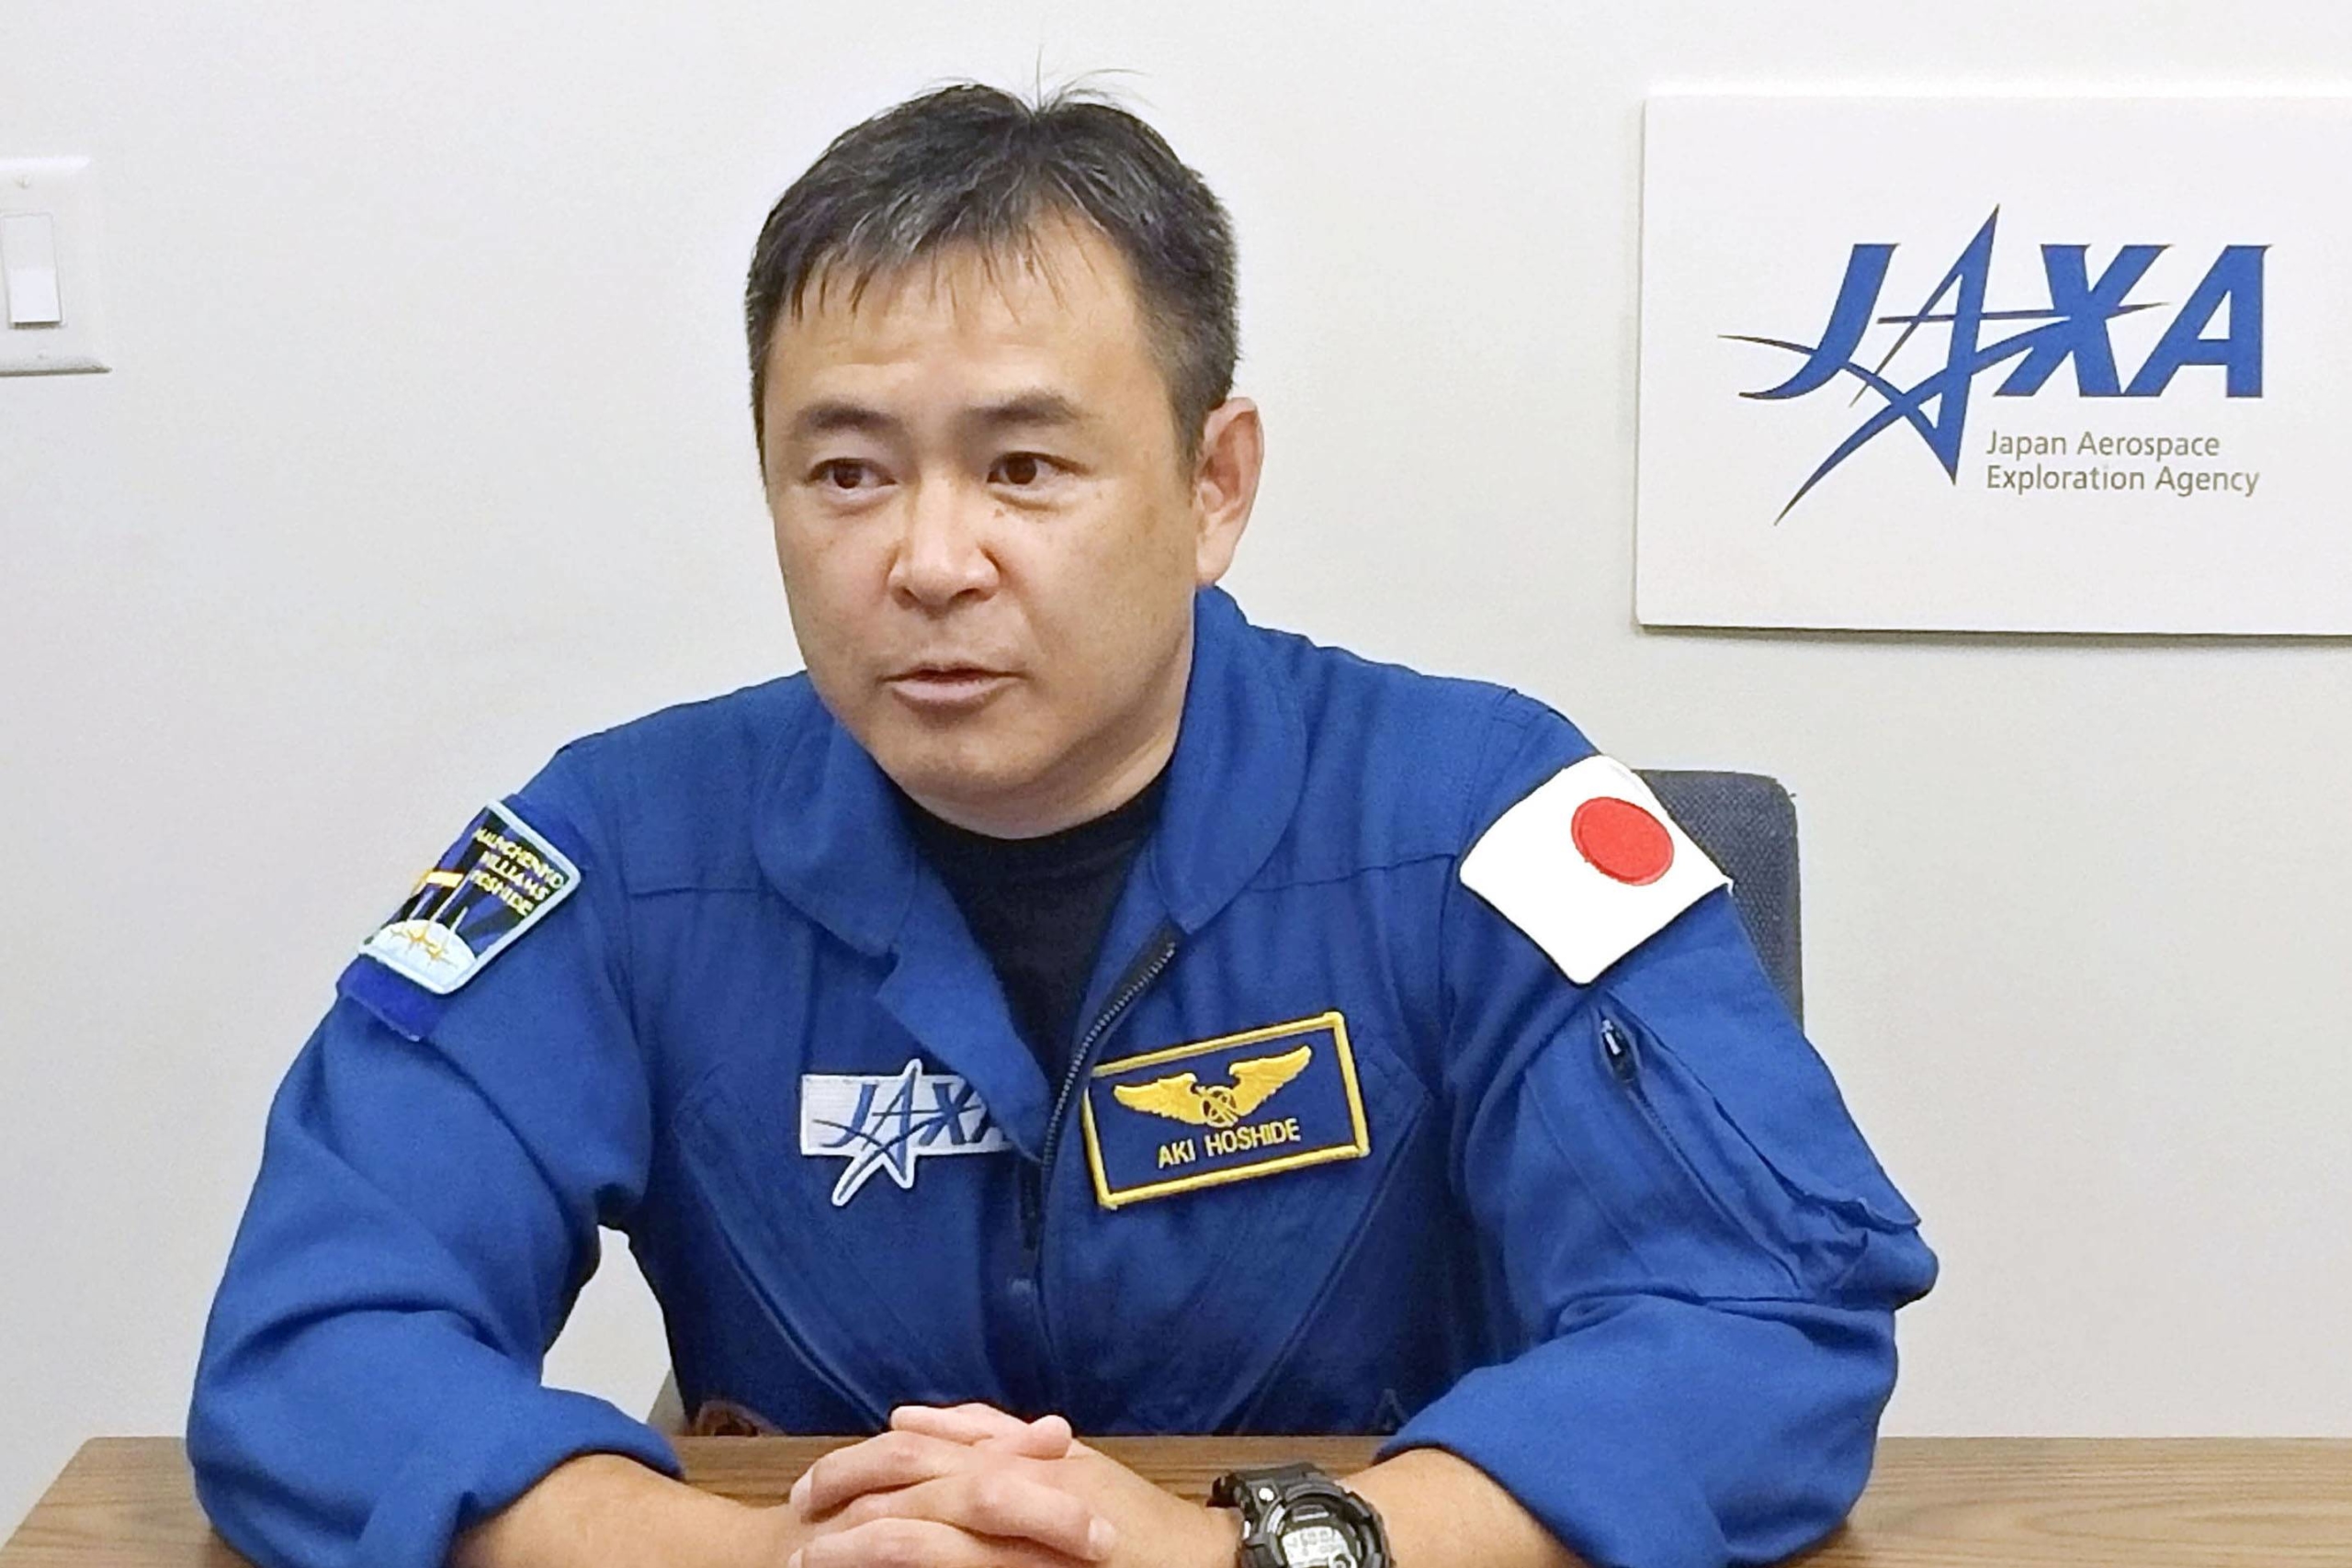 astronaut official uniform